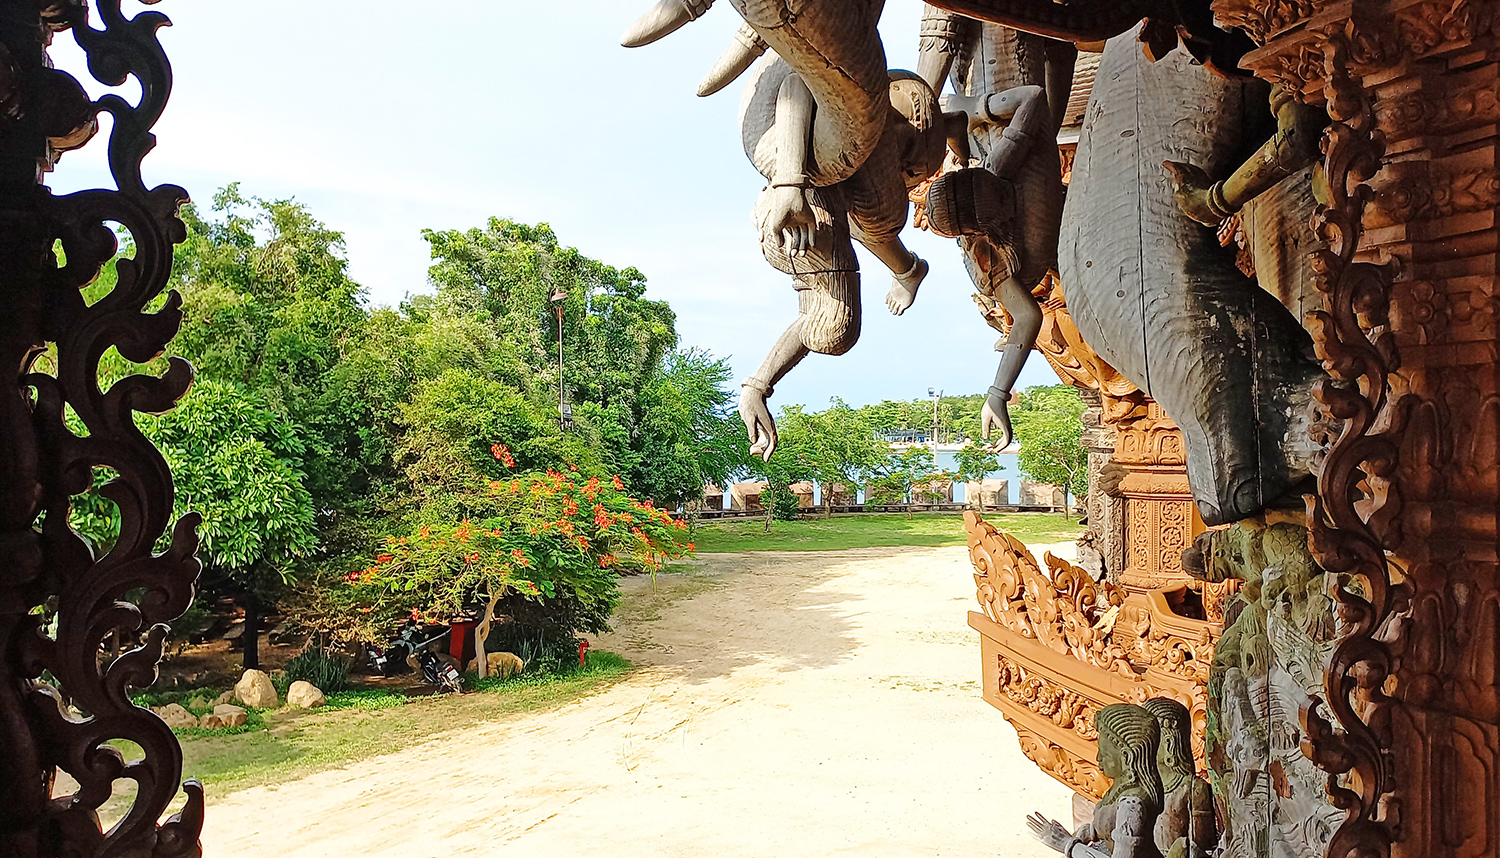 Cosa vedere a Pattaya Chonburi: Santuario della Verita - Sanctuary of Truth